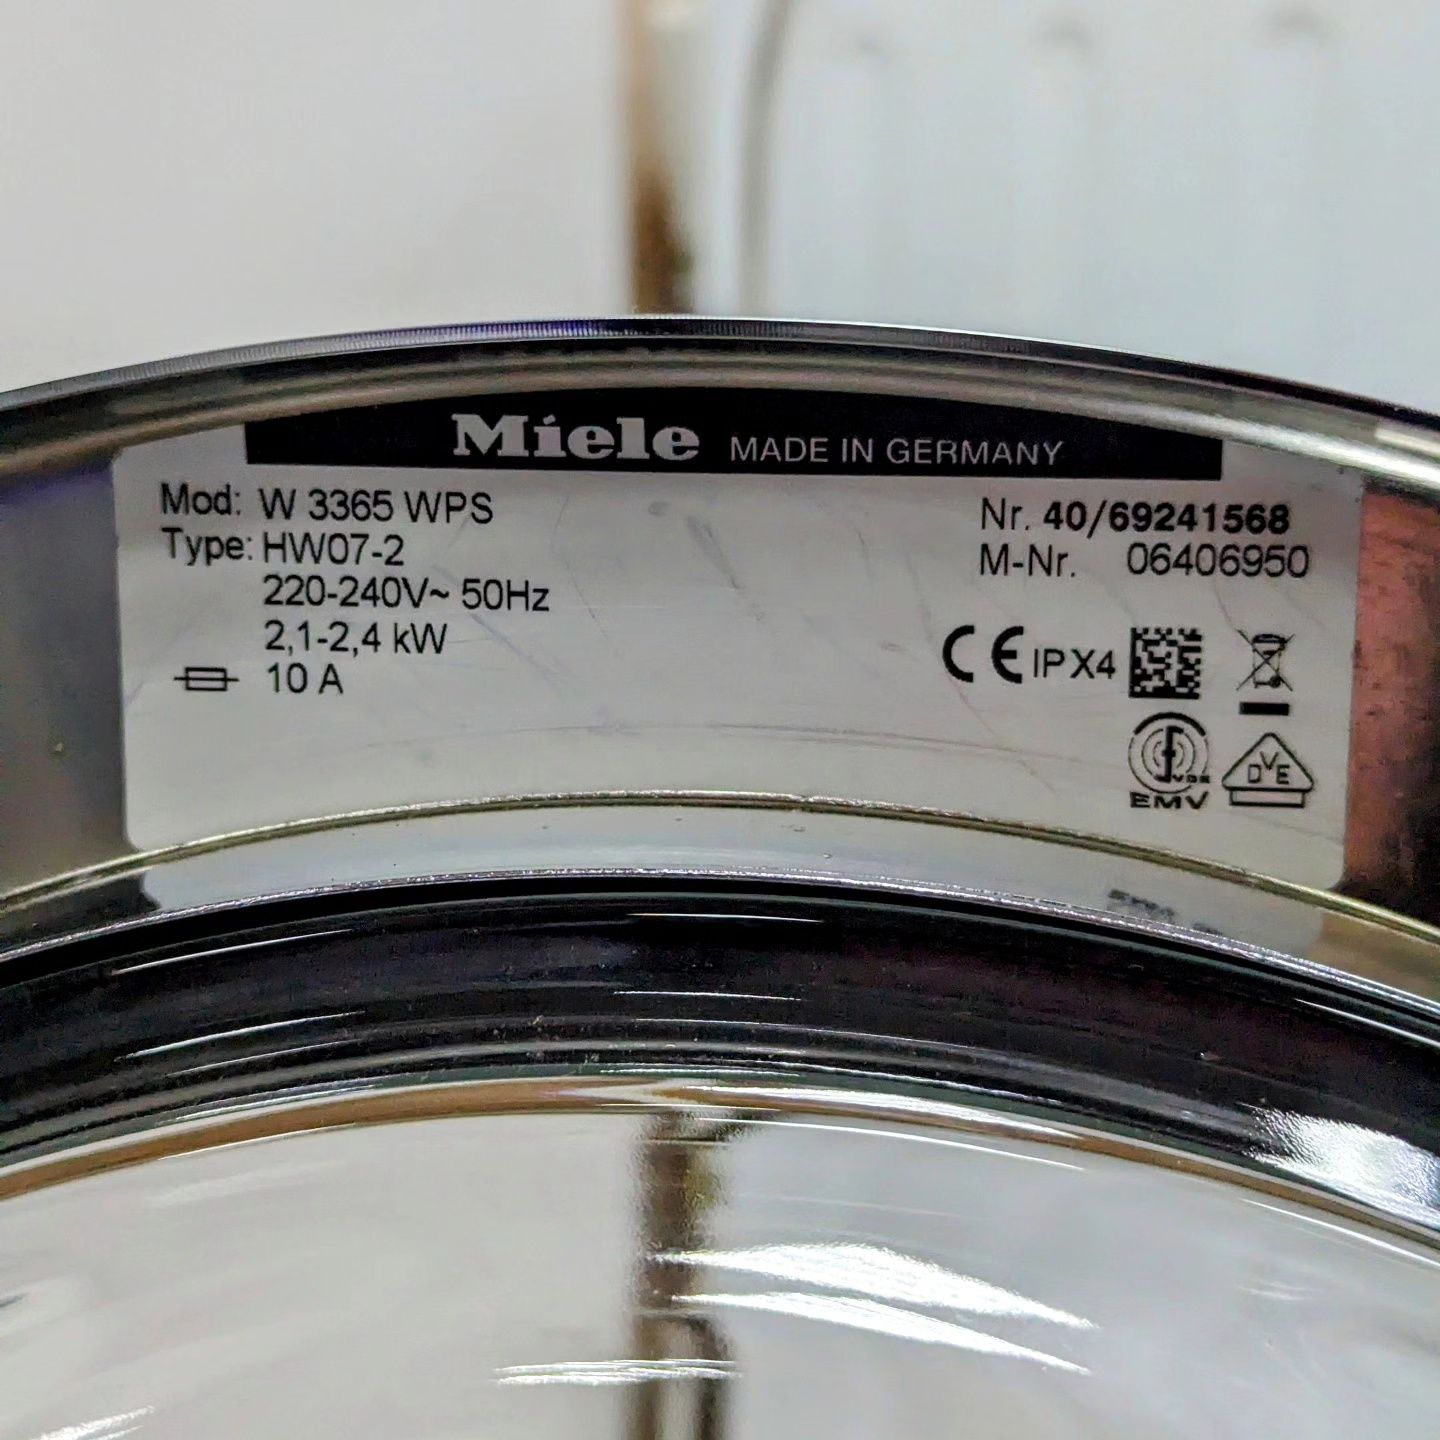 Преміальна пральна машина MIELE SOFTTRONIC W3365 / Гарантія/Стиральная